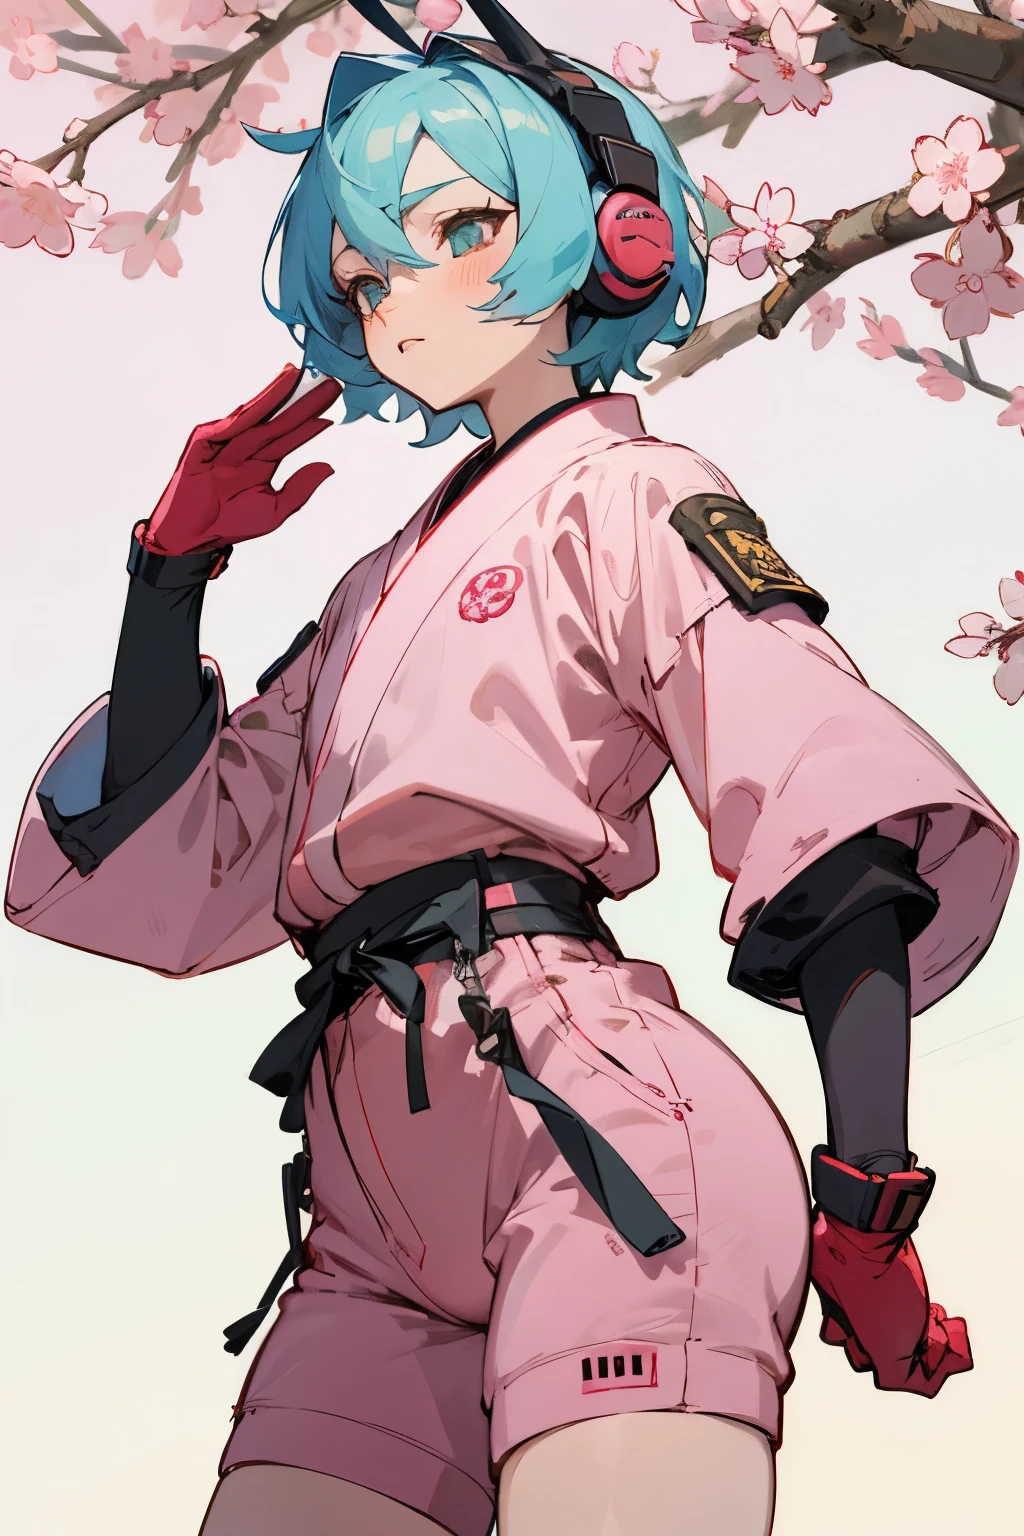 身穿樱花主题连体衣的动漫女孩, 戴上耳机, 穿着连身裤, 樱花主题, 角色设计风格 